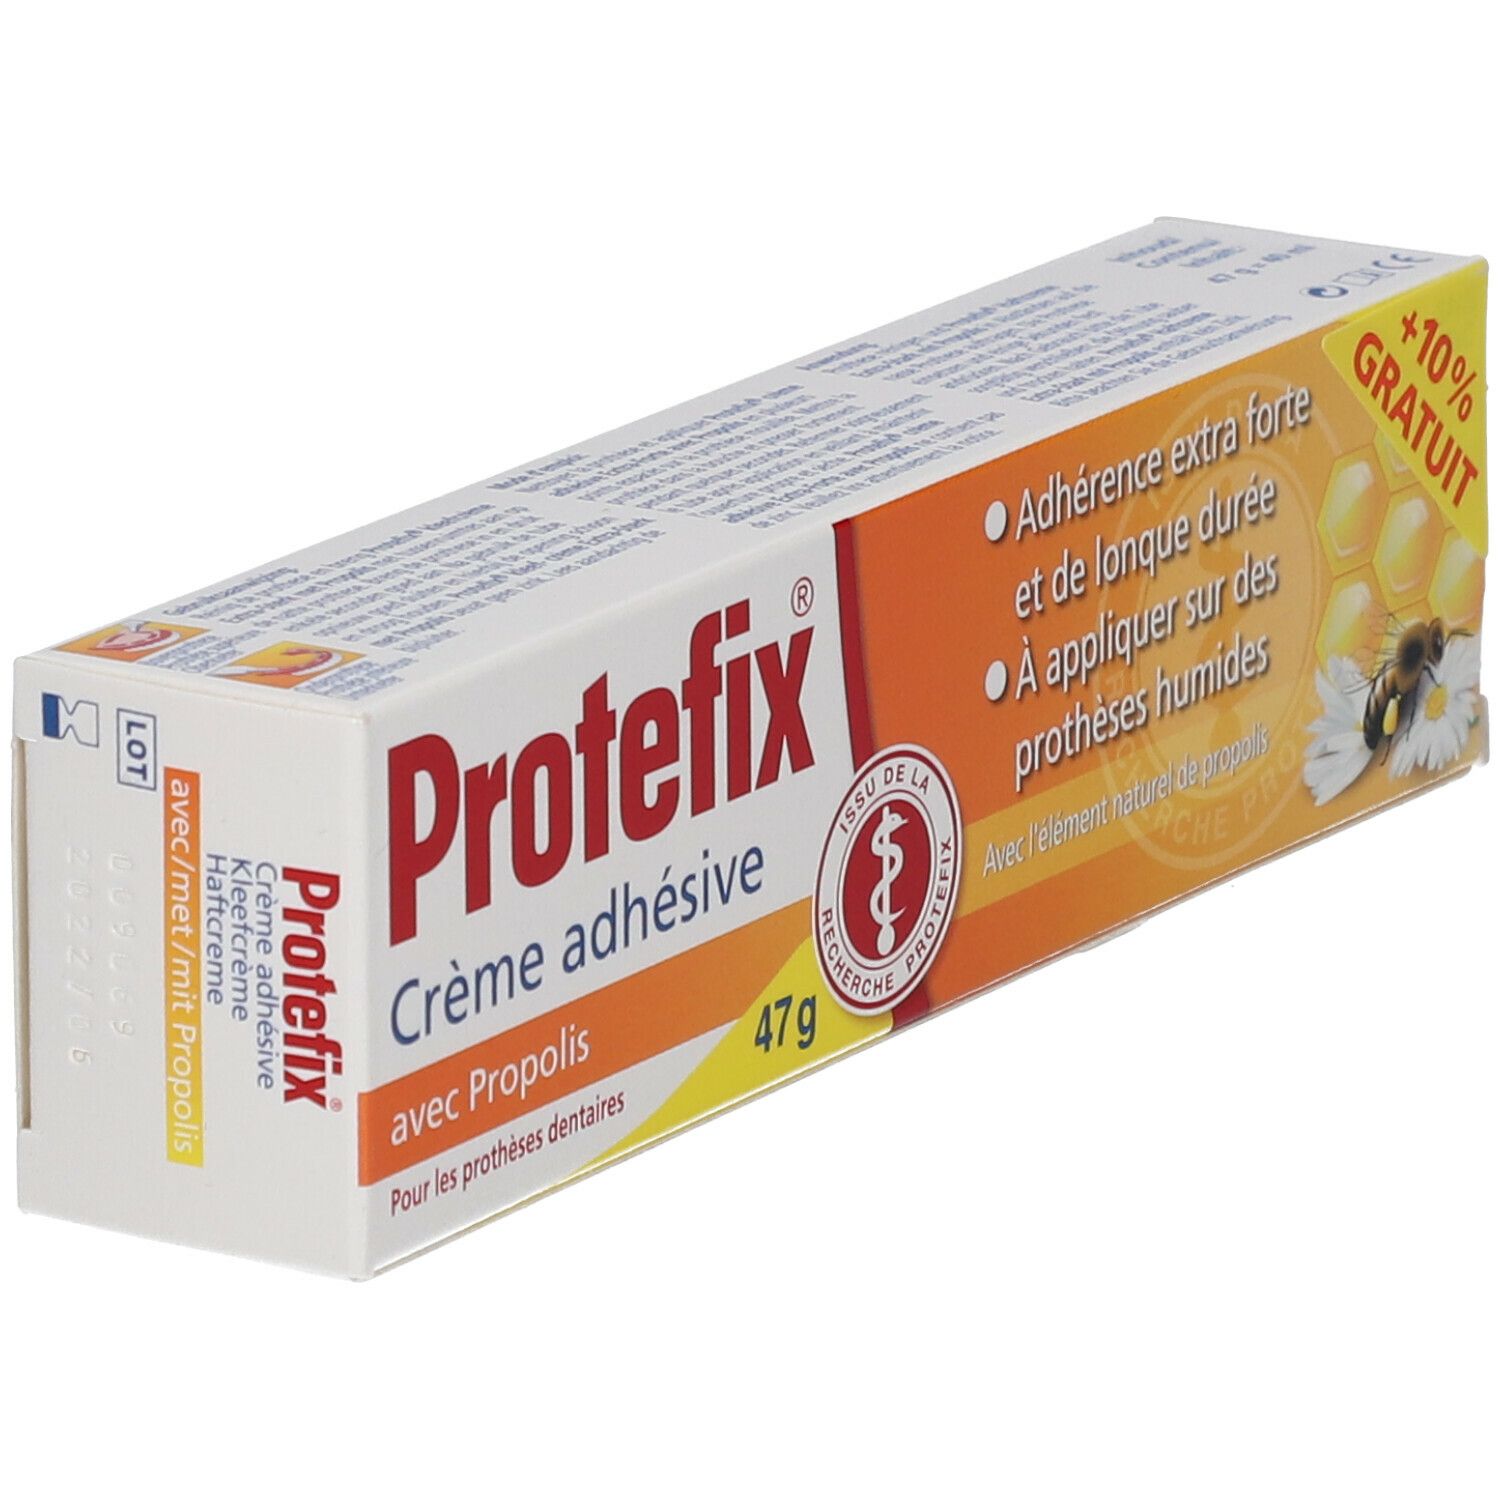 Protefix Kleefcrème X-Sterk met Propolis